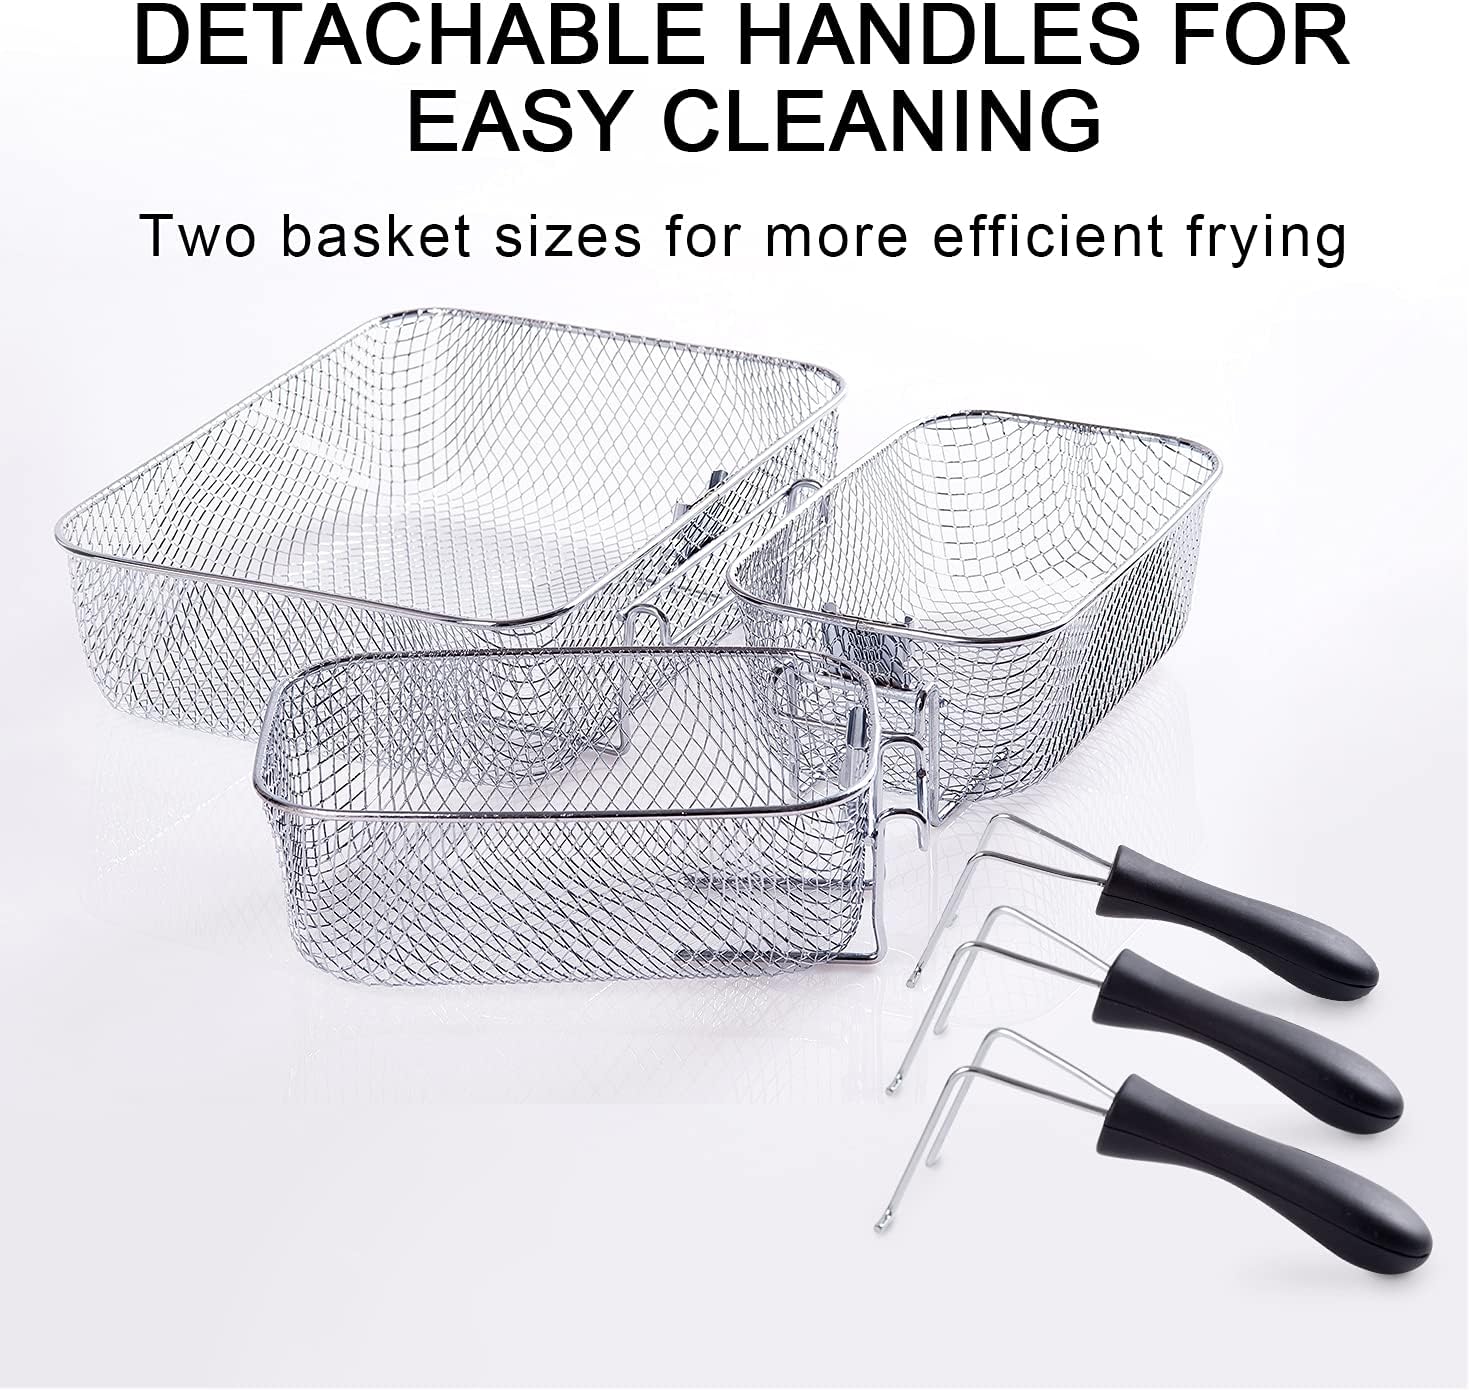 Secura 1700-Watt Stainless-Steel Triple Basket Electric Deep Fryer Review